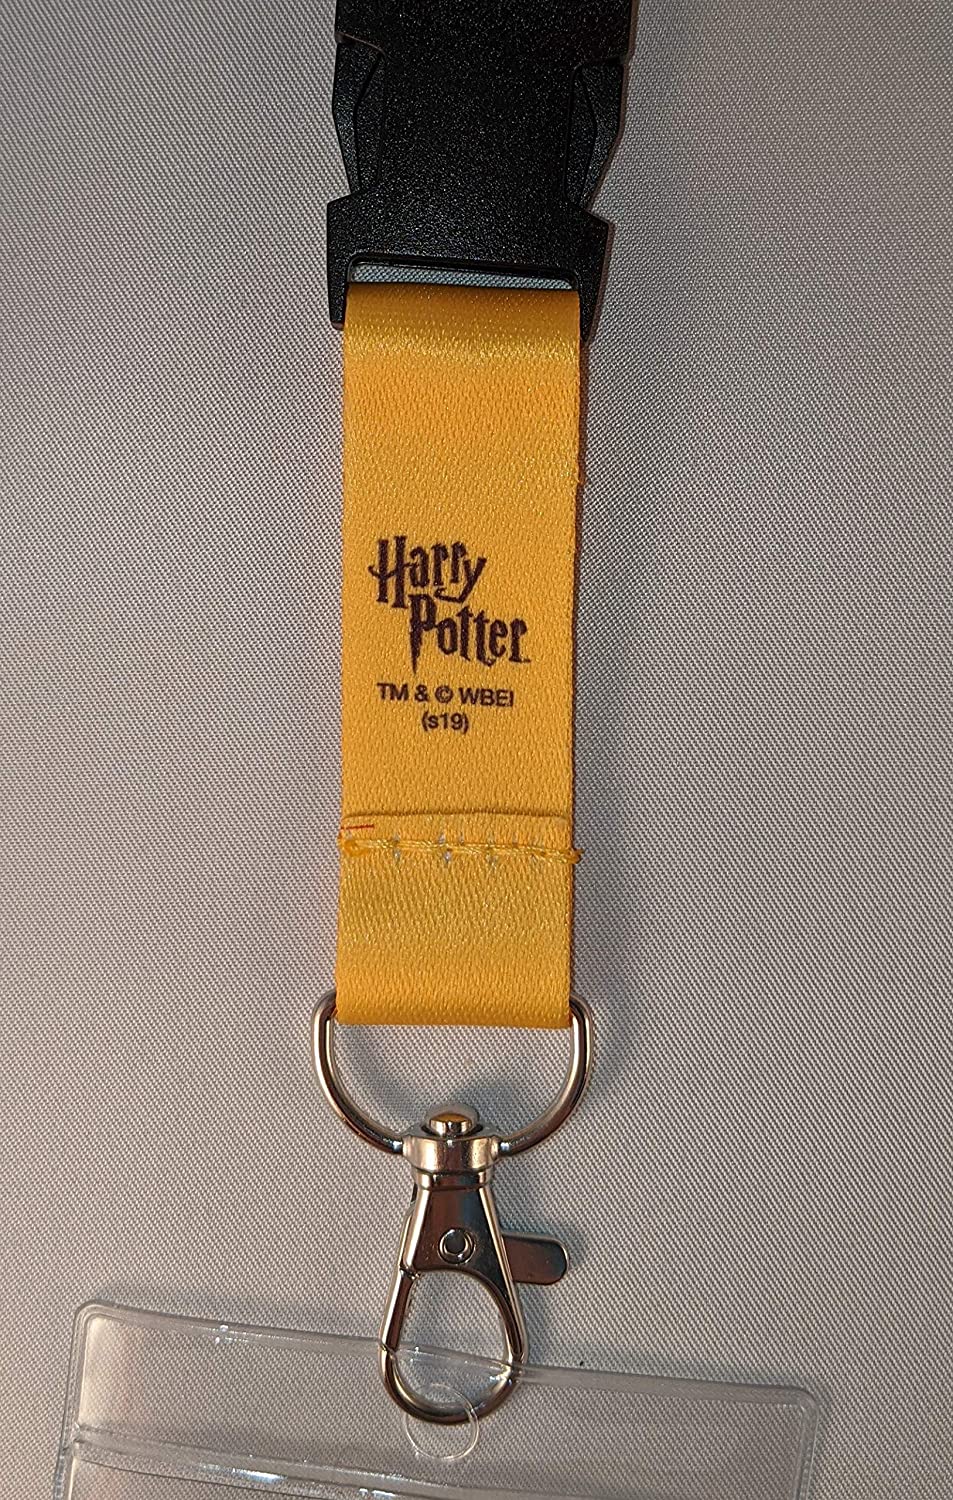 Harry Potter Hogwarts House ID Badge Holder Lanyard & Keychain Bundle